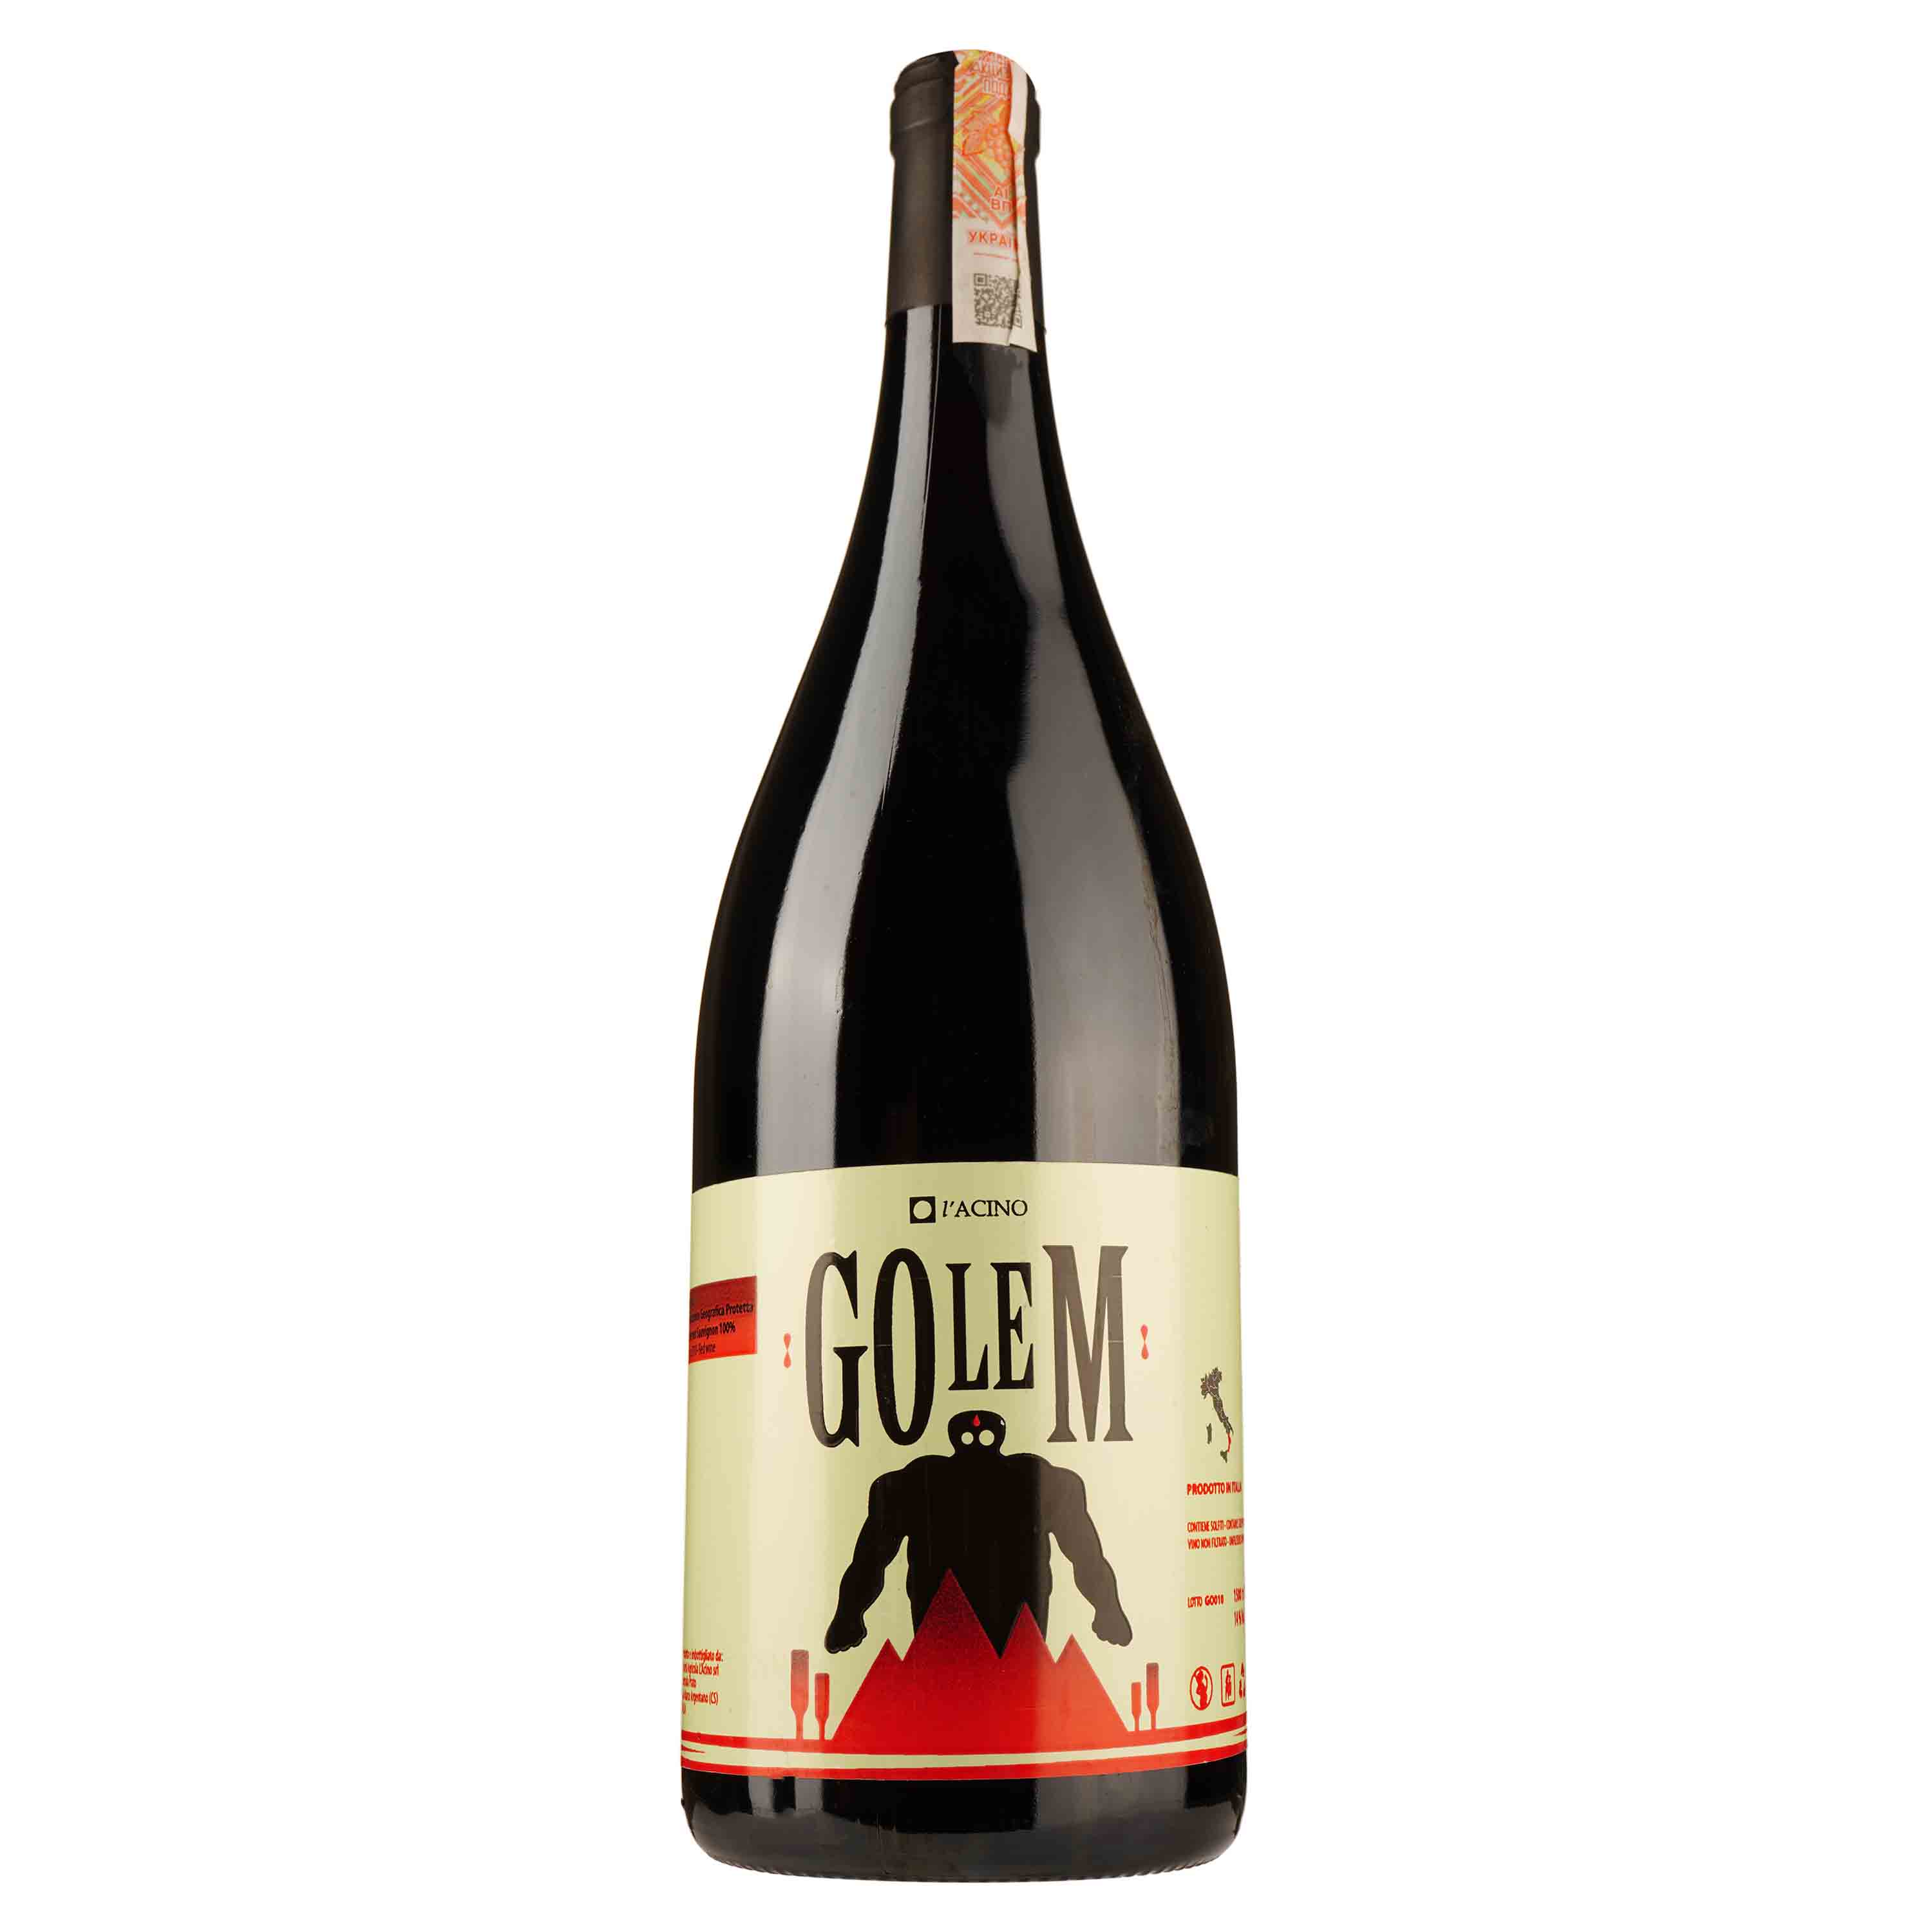 Вино L'Acino Golem 2010 IGT, красное, сухое, 14%, 1,5 л (890031) - фото 1